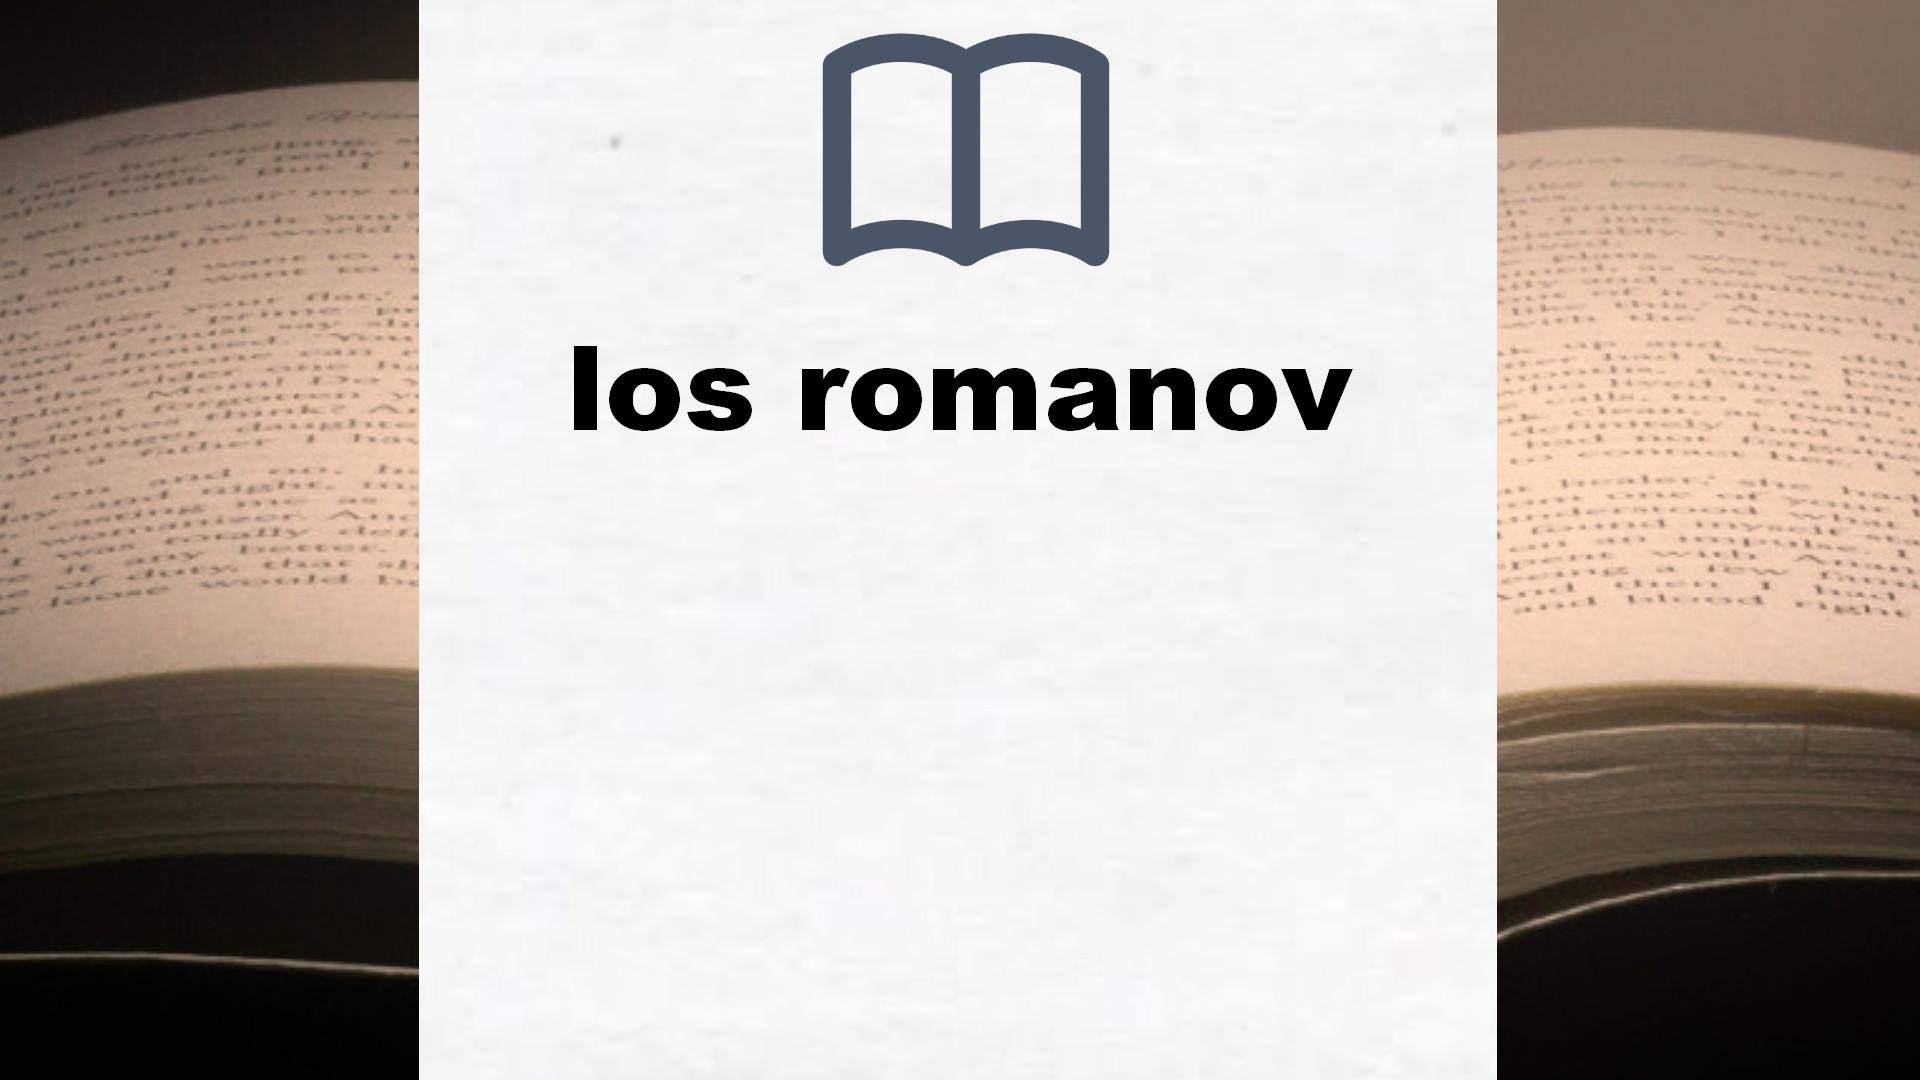 Libros sobre los romanov